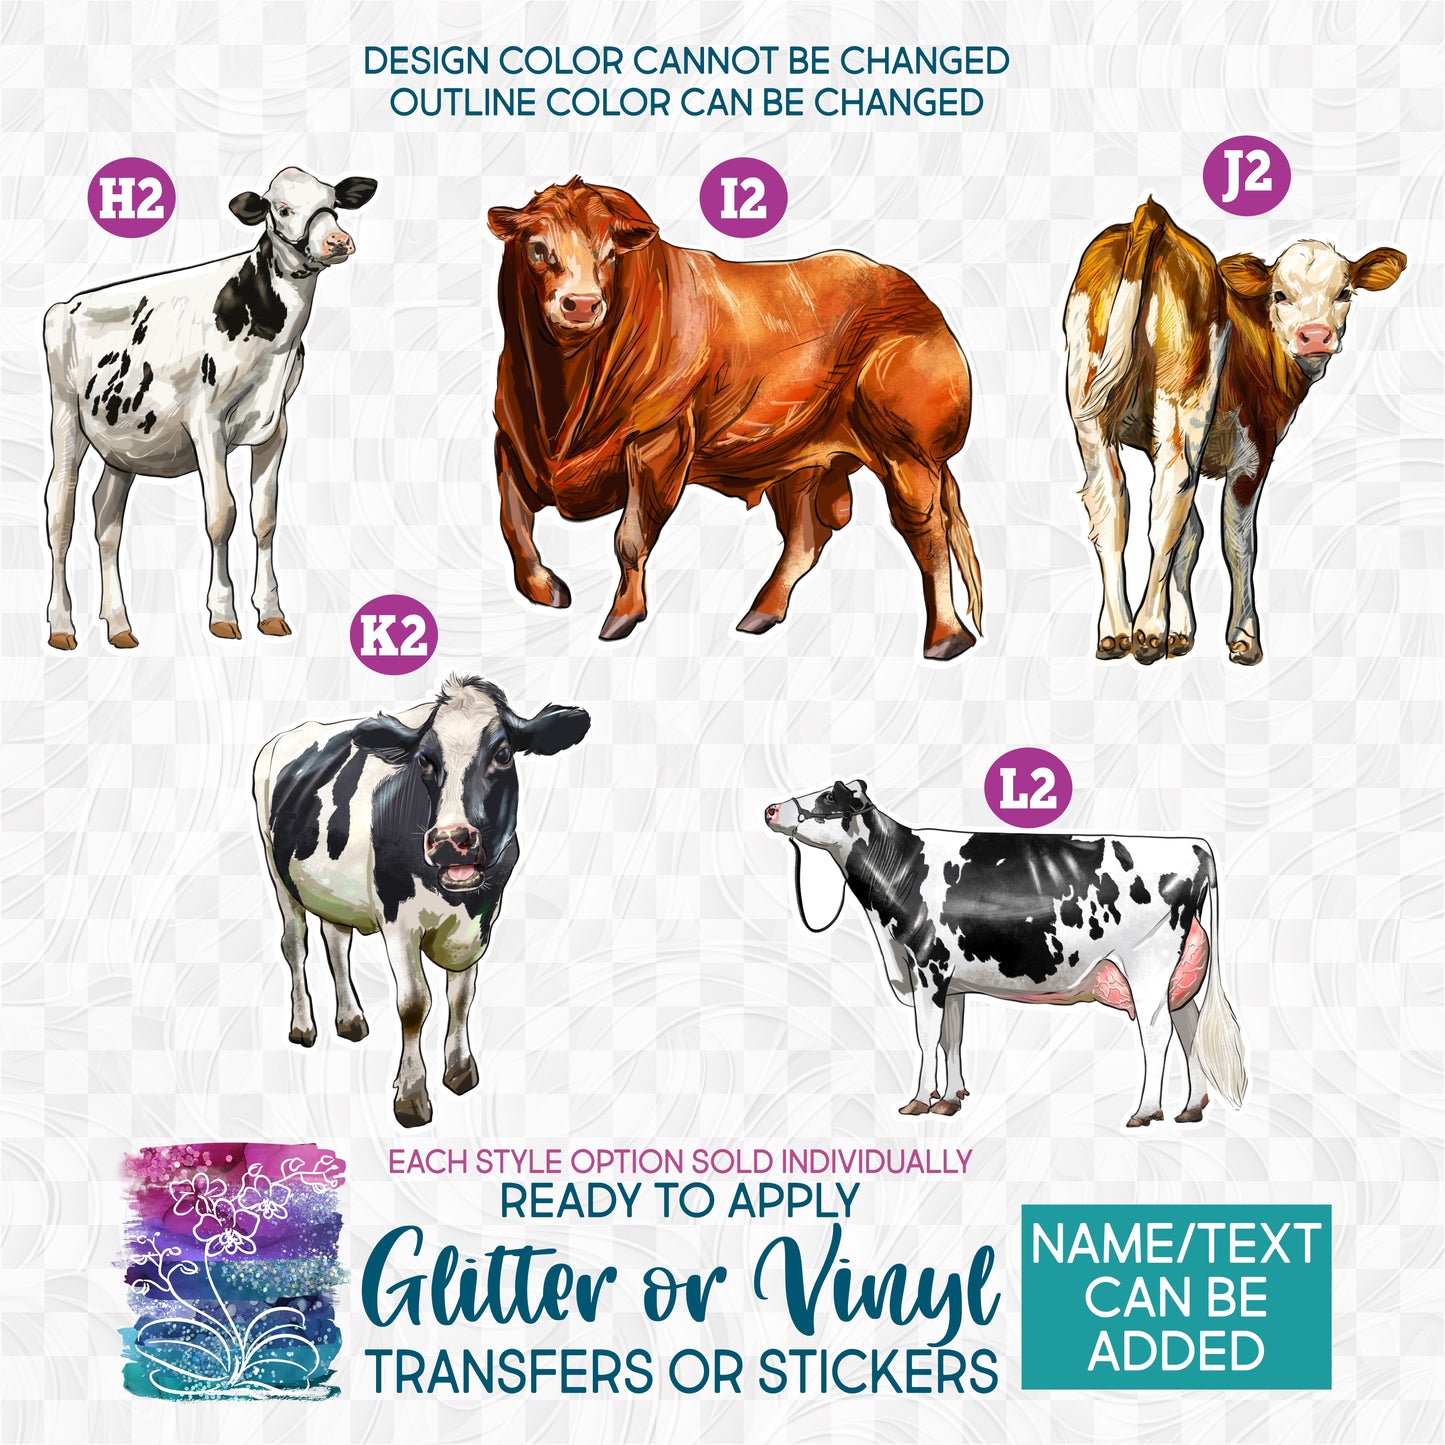 (s098-E) Cow Cows Calf Heifer Bull Cattle Glitter or Vinyl Iron-On Transfer or Sticker